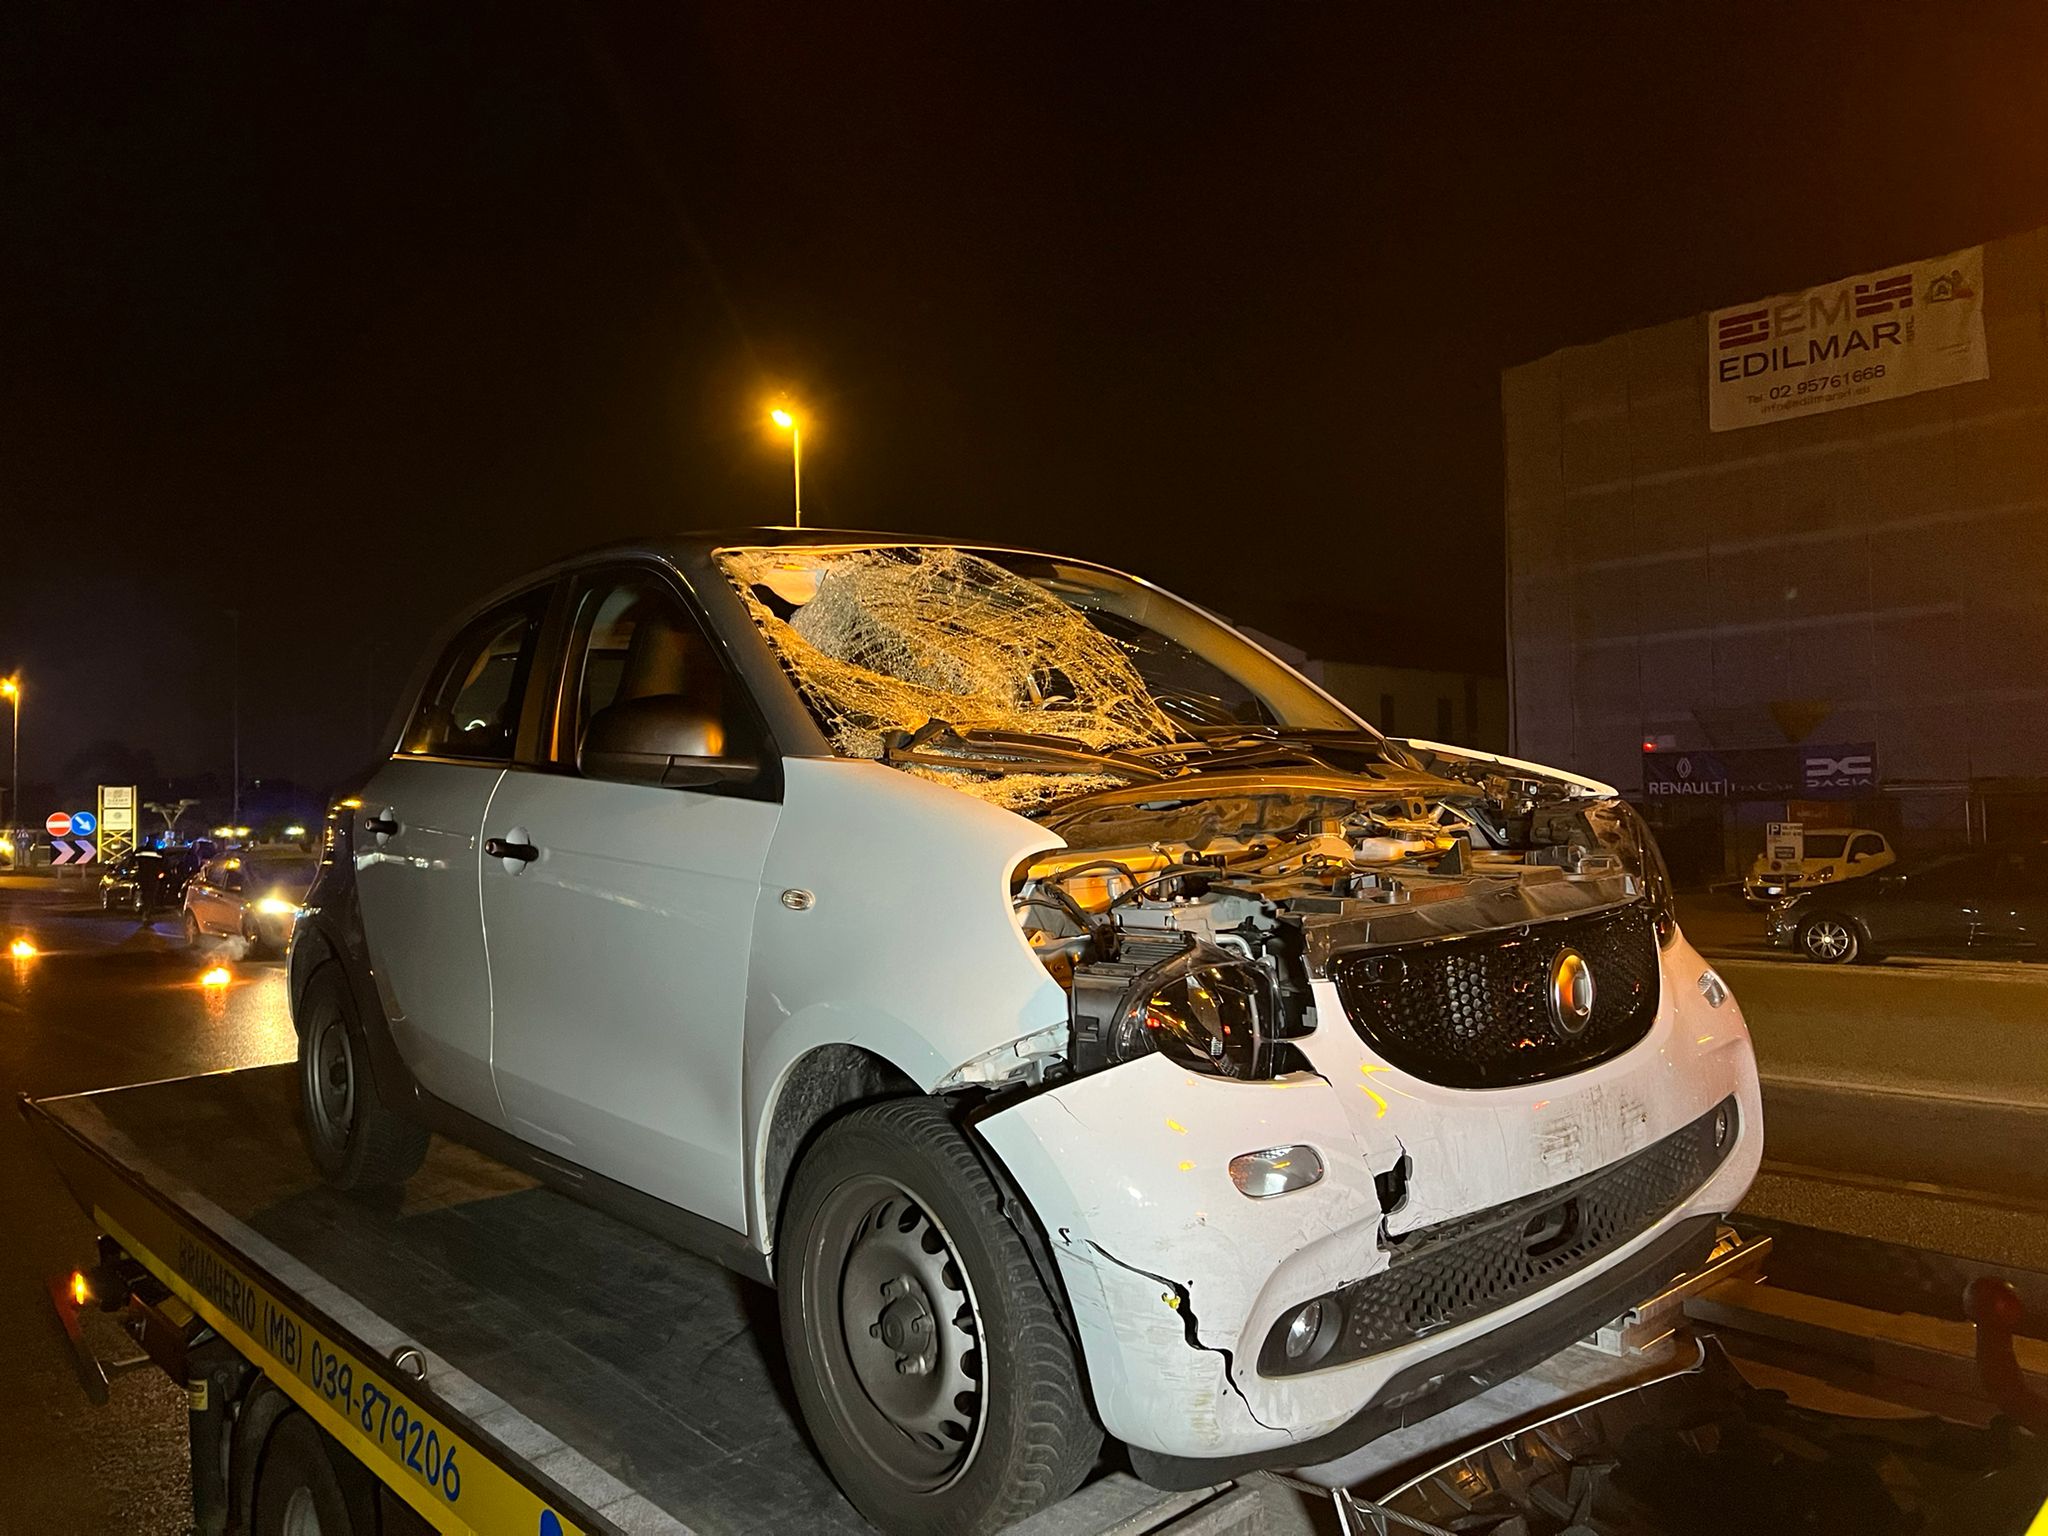 Monza incidente investimento pedone auto distrutta